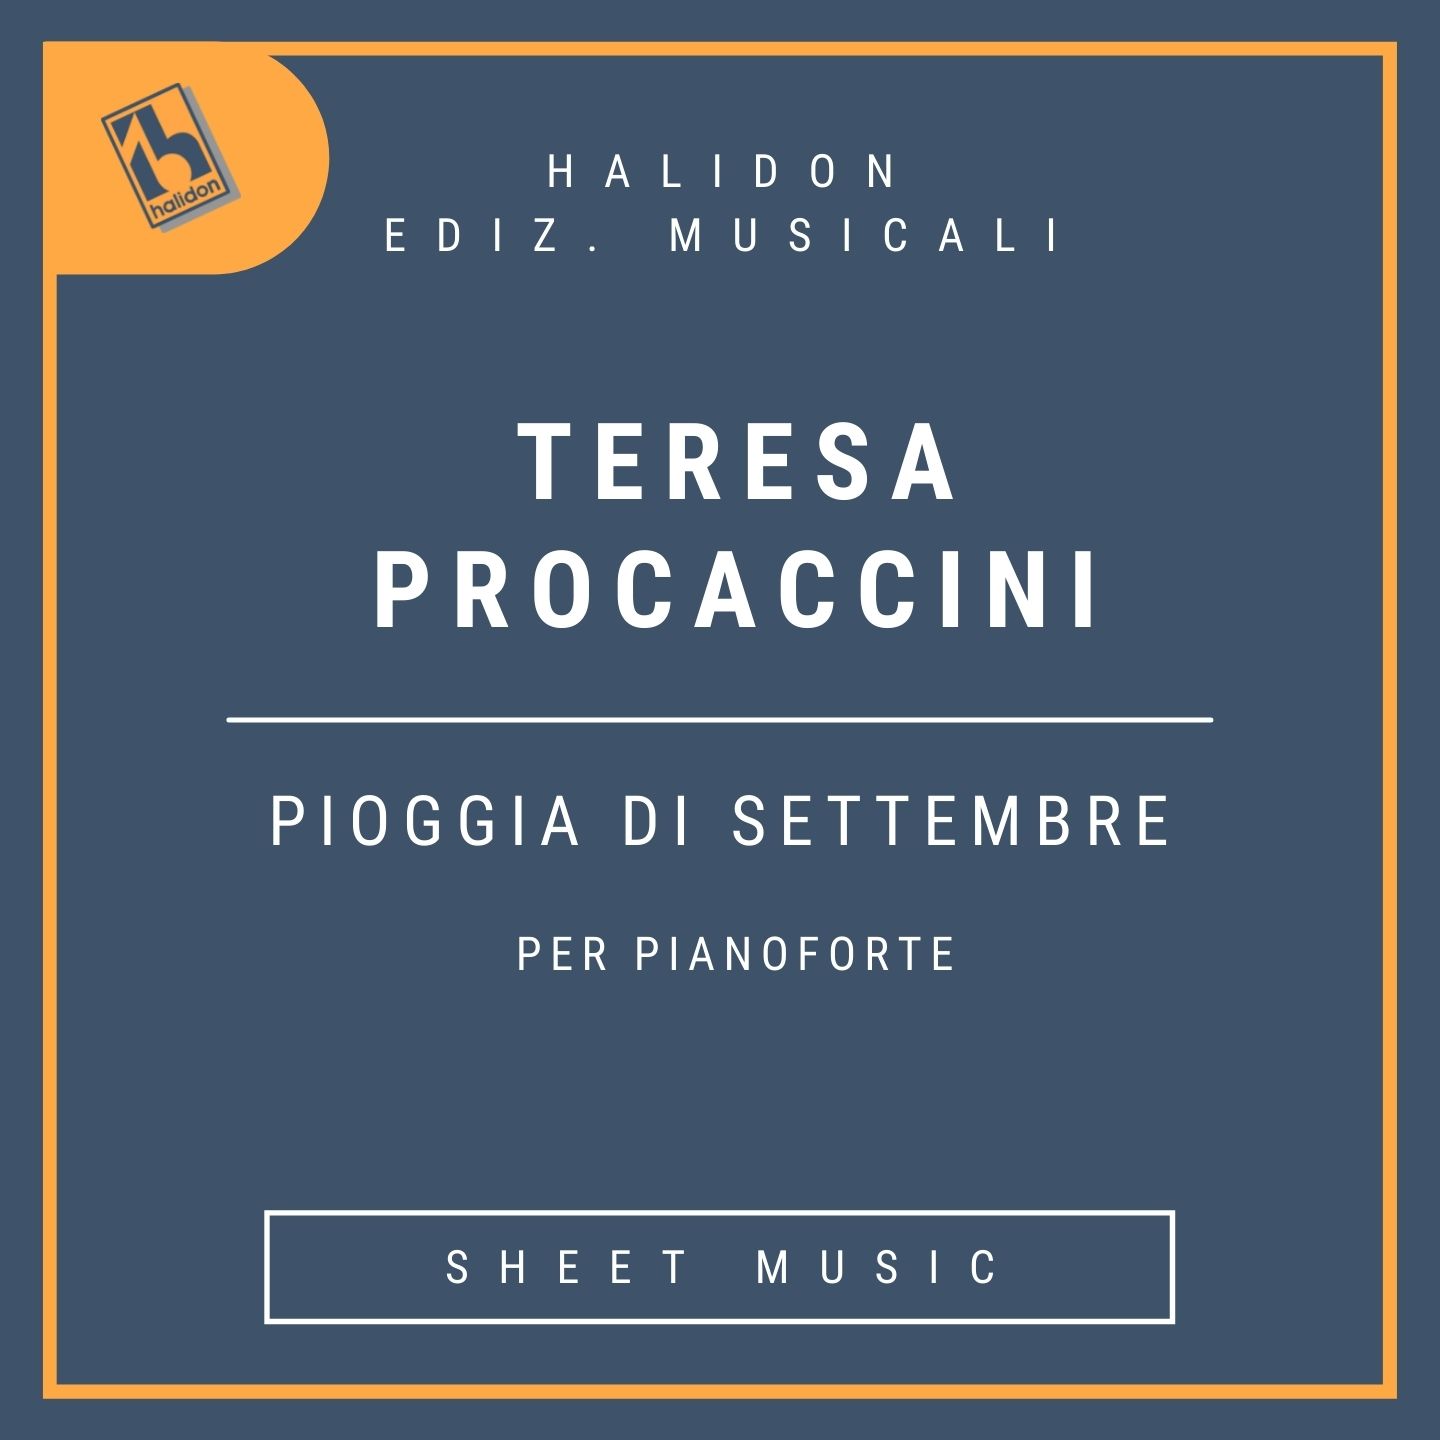 Teresa Procaccini - Pioggia di settembre